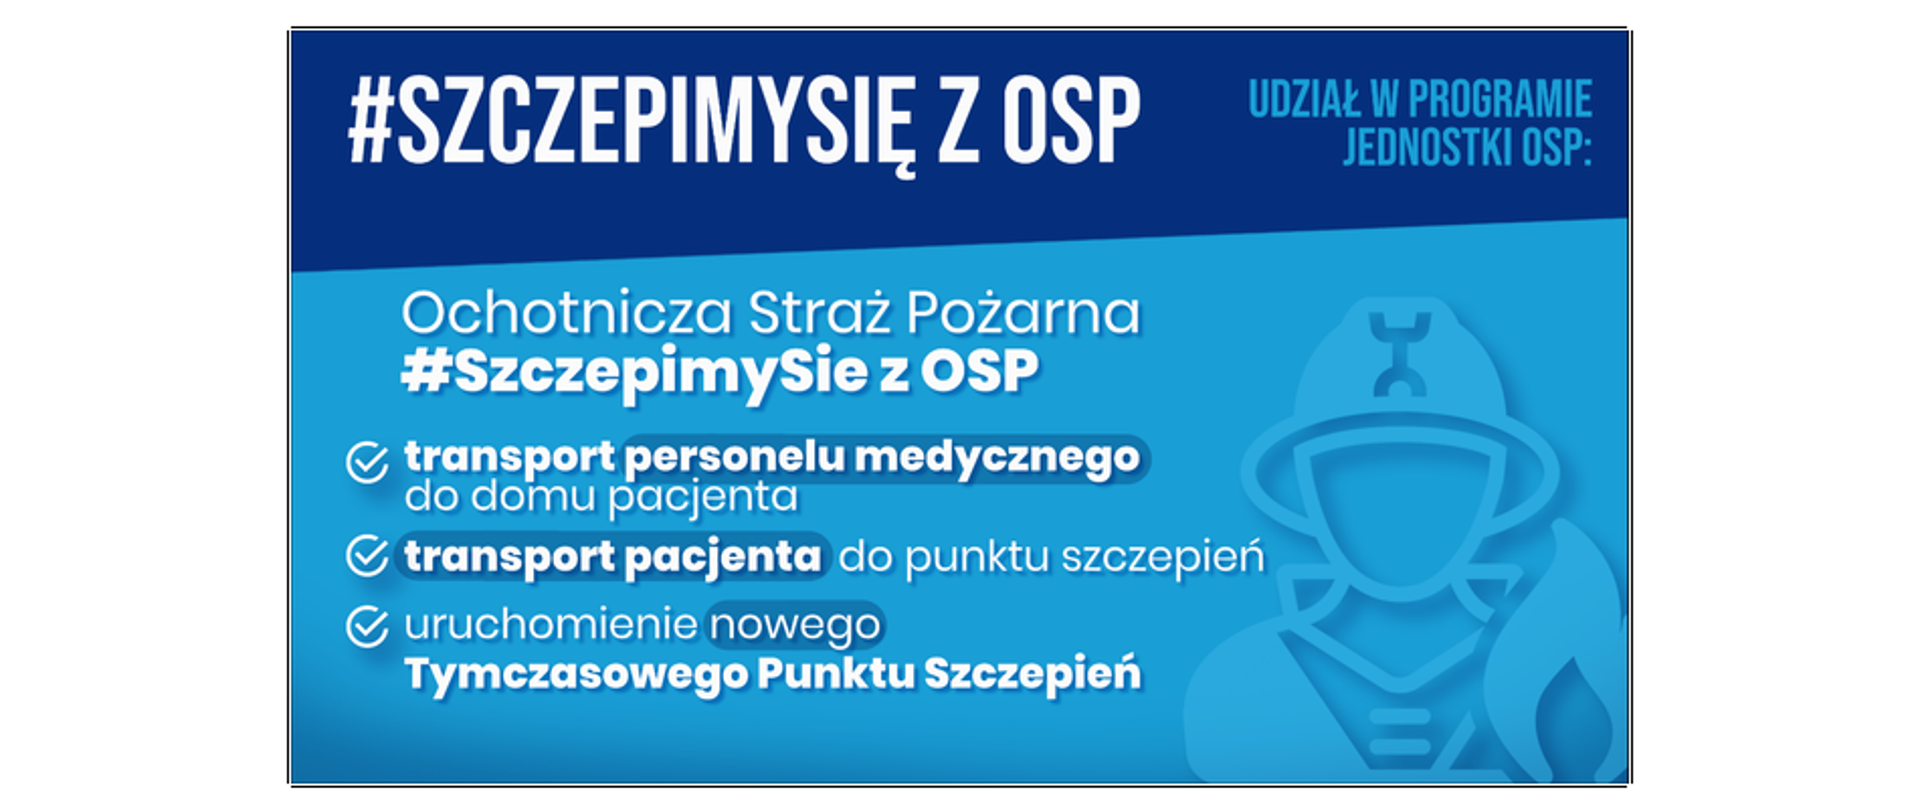 Plakat informujący o akcji #SzczepimySię z OSP dot. akcji szczepień przeciwko Covid-19 organizowanej przy współudziale jednostek OSP